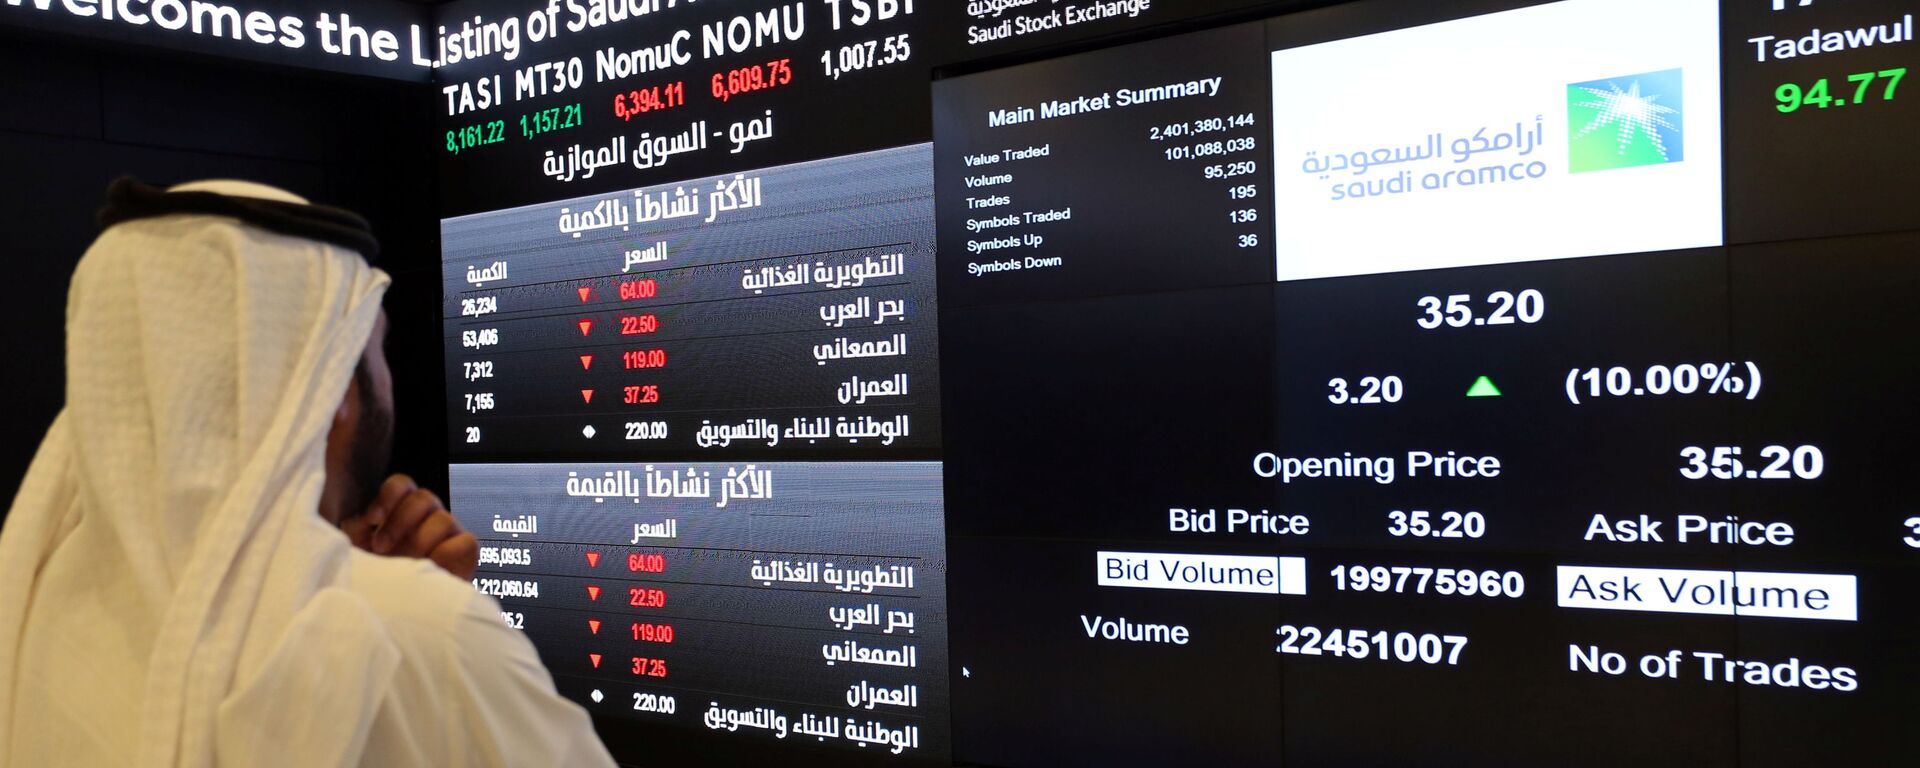 شاشة تعرض معلومات الأسهم في السوق المالية السعودية (تداول)، في الرياض، السعودية 11 ديسمبر 2019 - سبوتنيك عربي, 1920, 28.11.2021